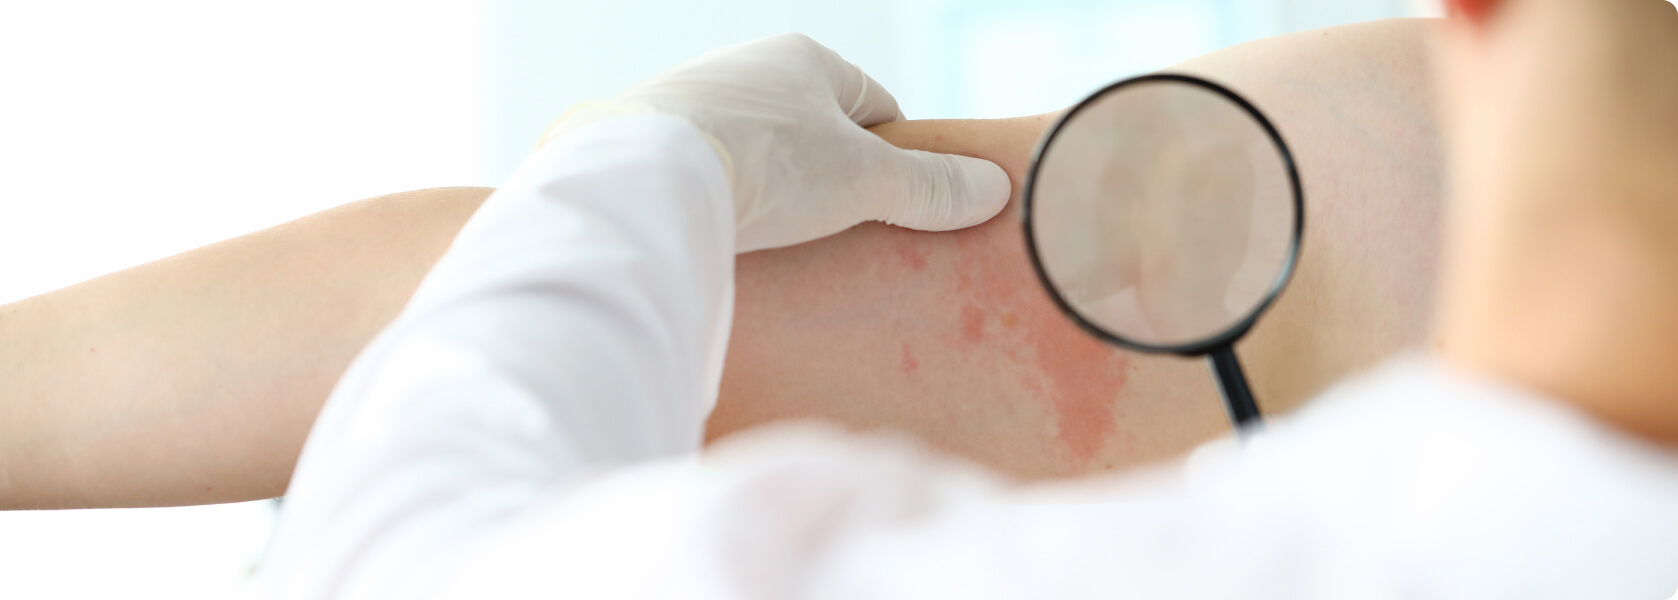 Dermatitis - Je nach Ursache des Ekzems können neben der Hauterkrankung auch weitere Krankheitssymptome wie Fieber